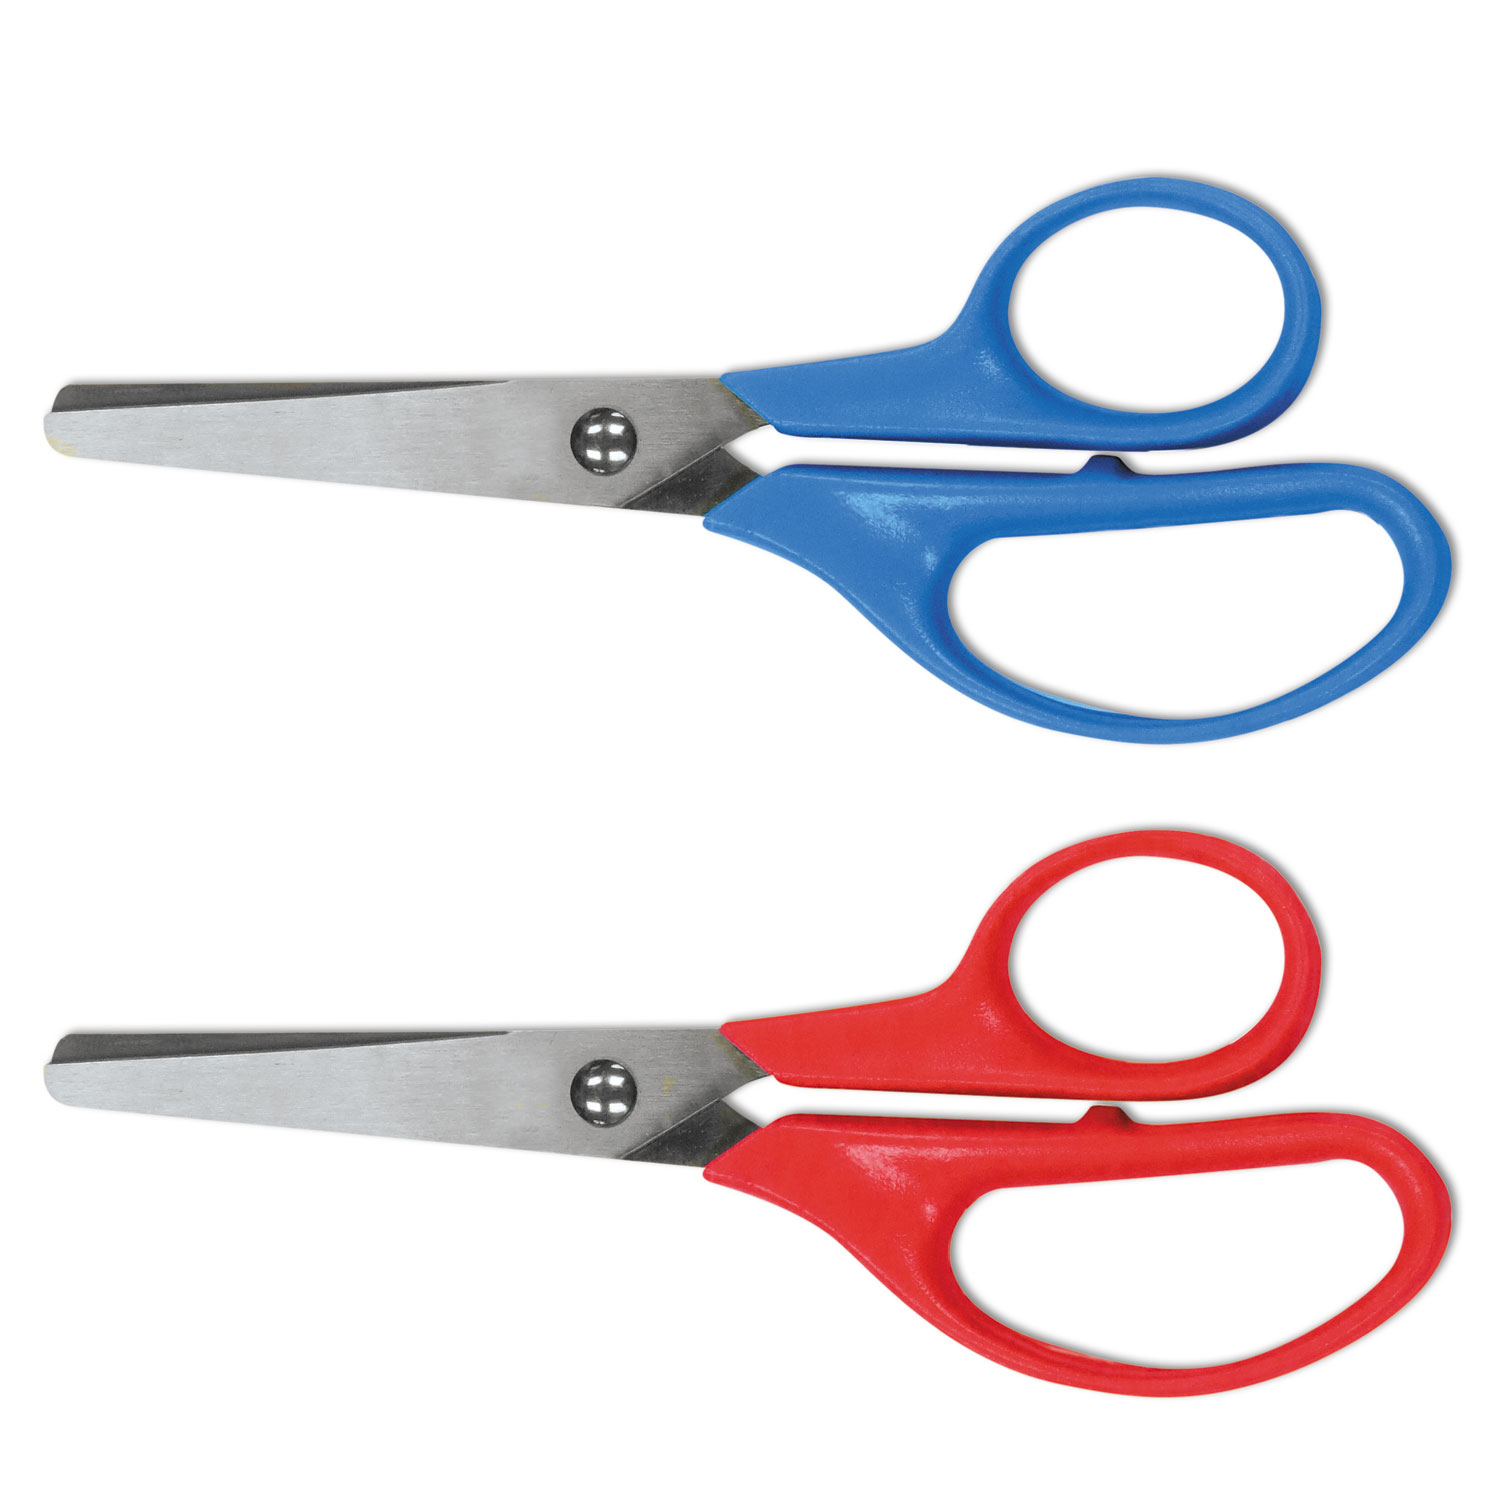 Kids' Scissors, 5 Handles, Pointed Tip, Assorted Colors, Pack Of 2 Scissors  - Zerbee